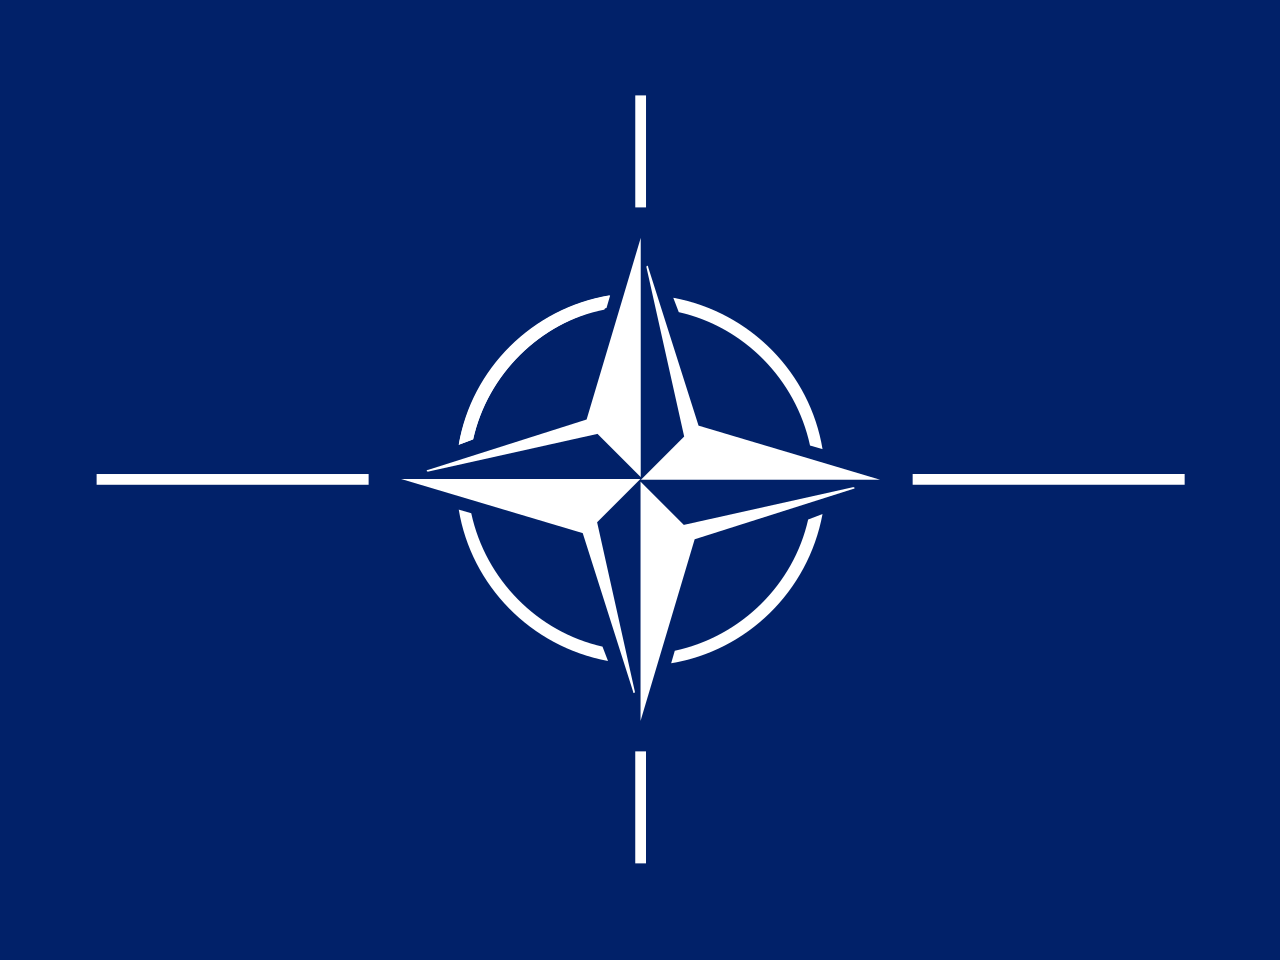 Le CNES accueillera le centre d’excellence pour le domaine spatial de l’OTAN